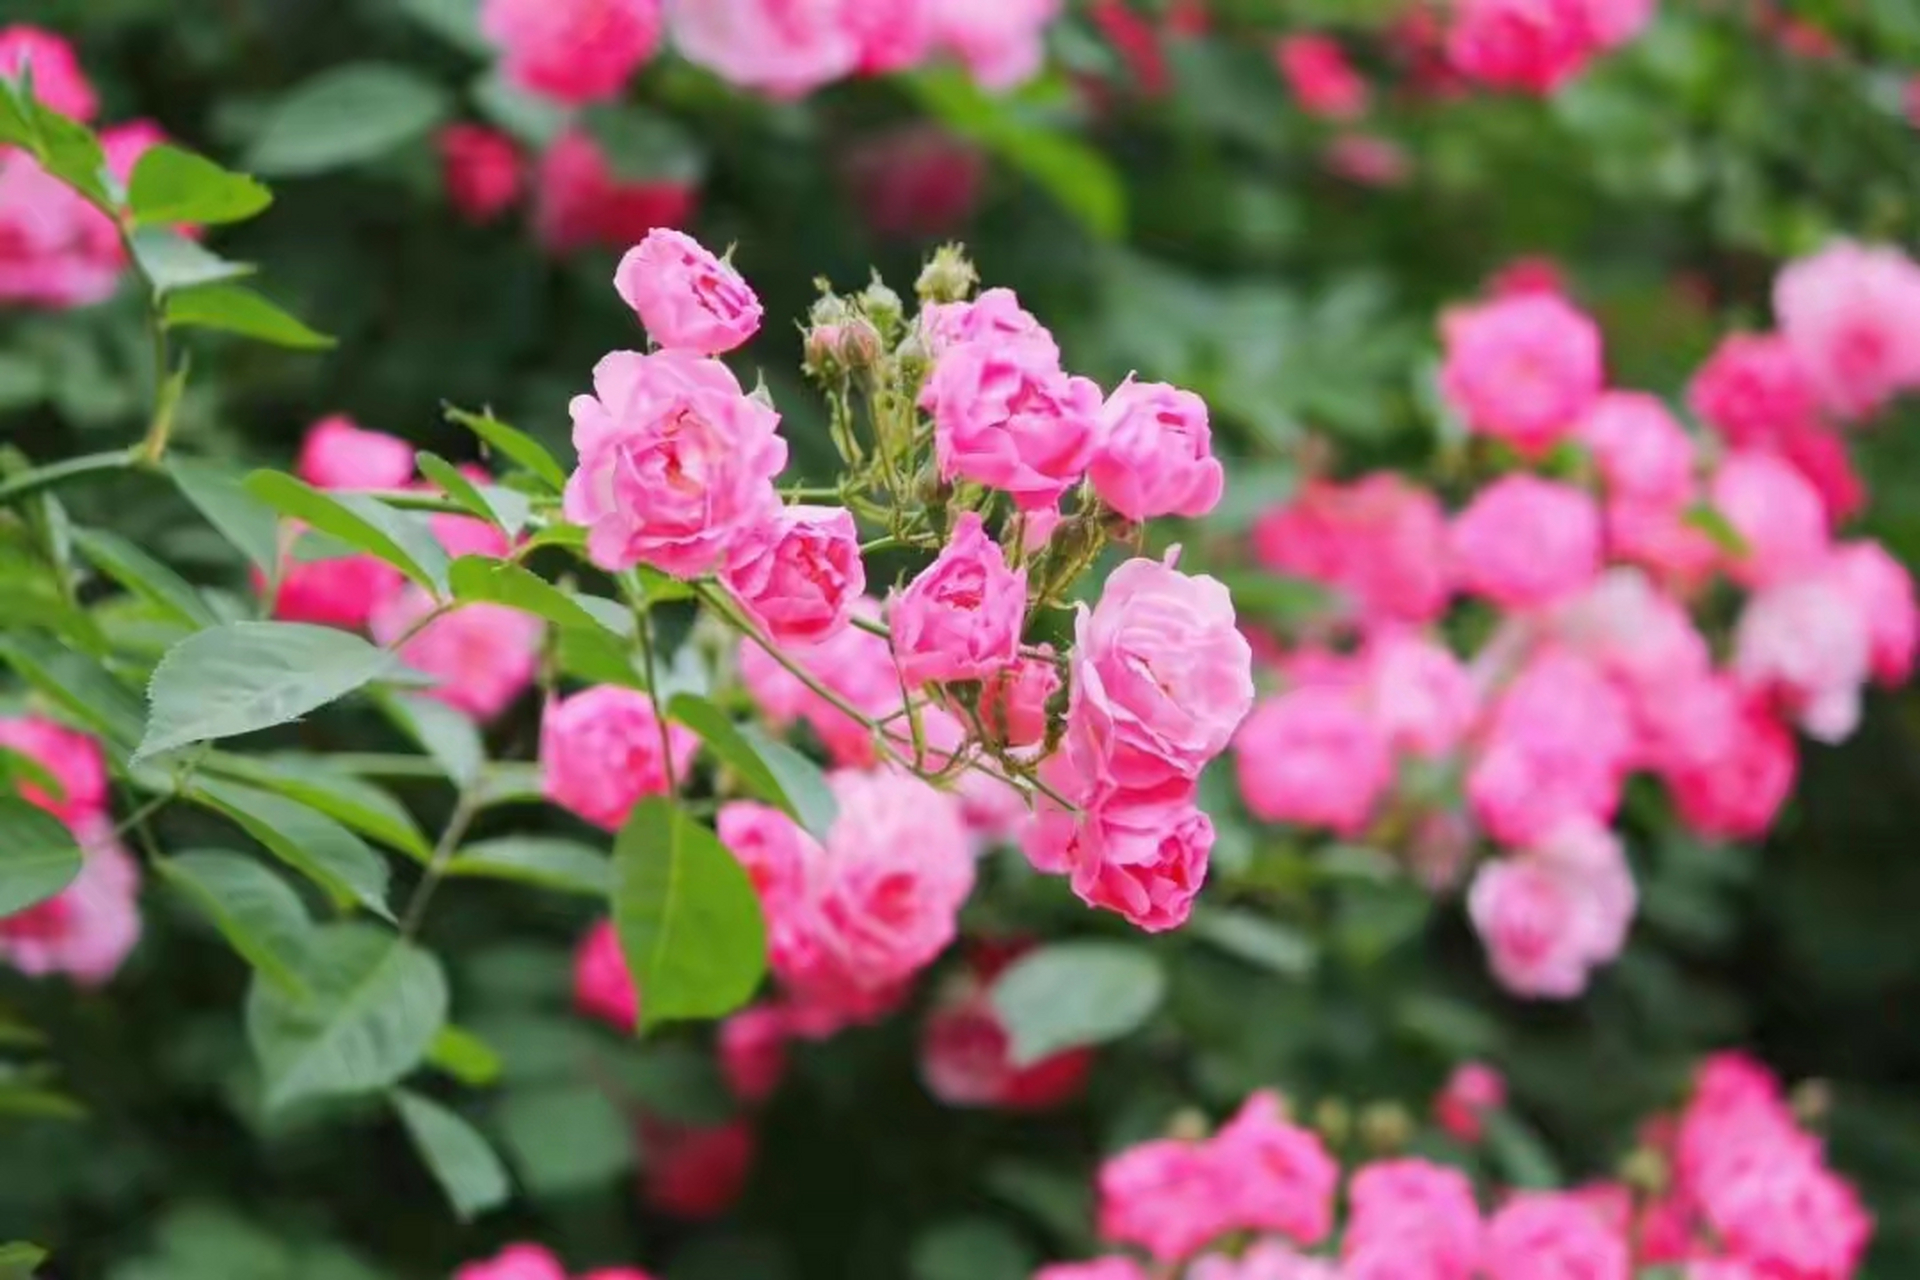 芳菲五月,很多地方的蔷薇花已经悄然绽放,  千枝万朵,艳丽娇媚,在风中